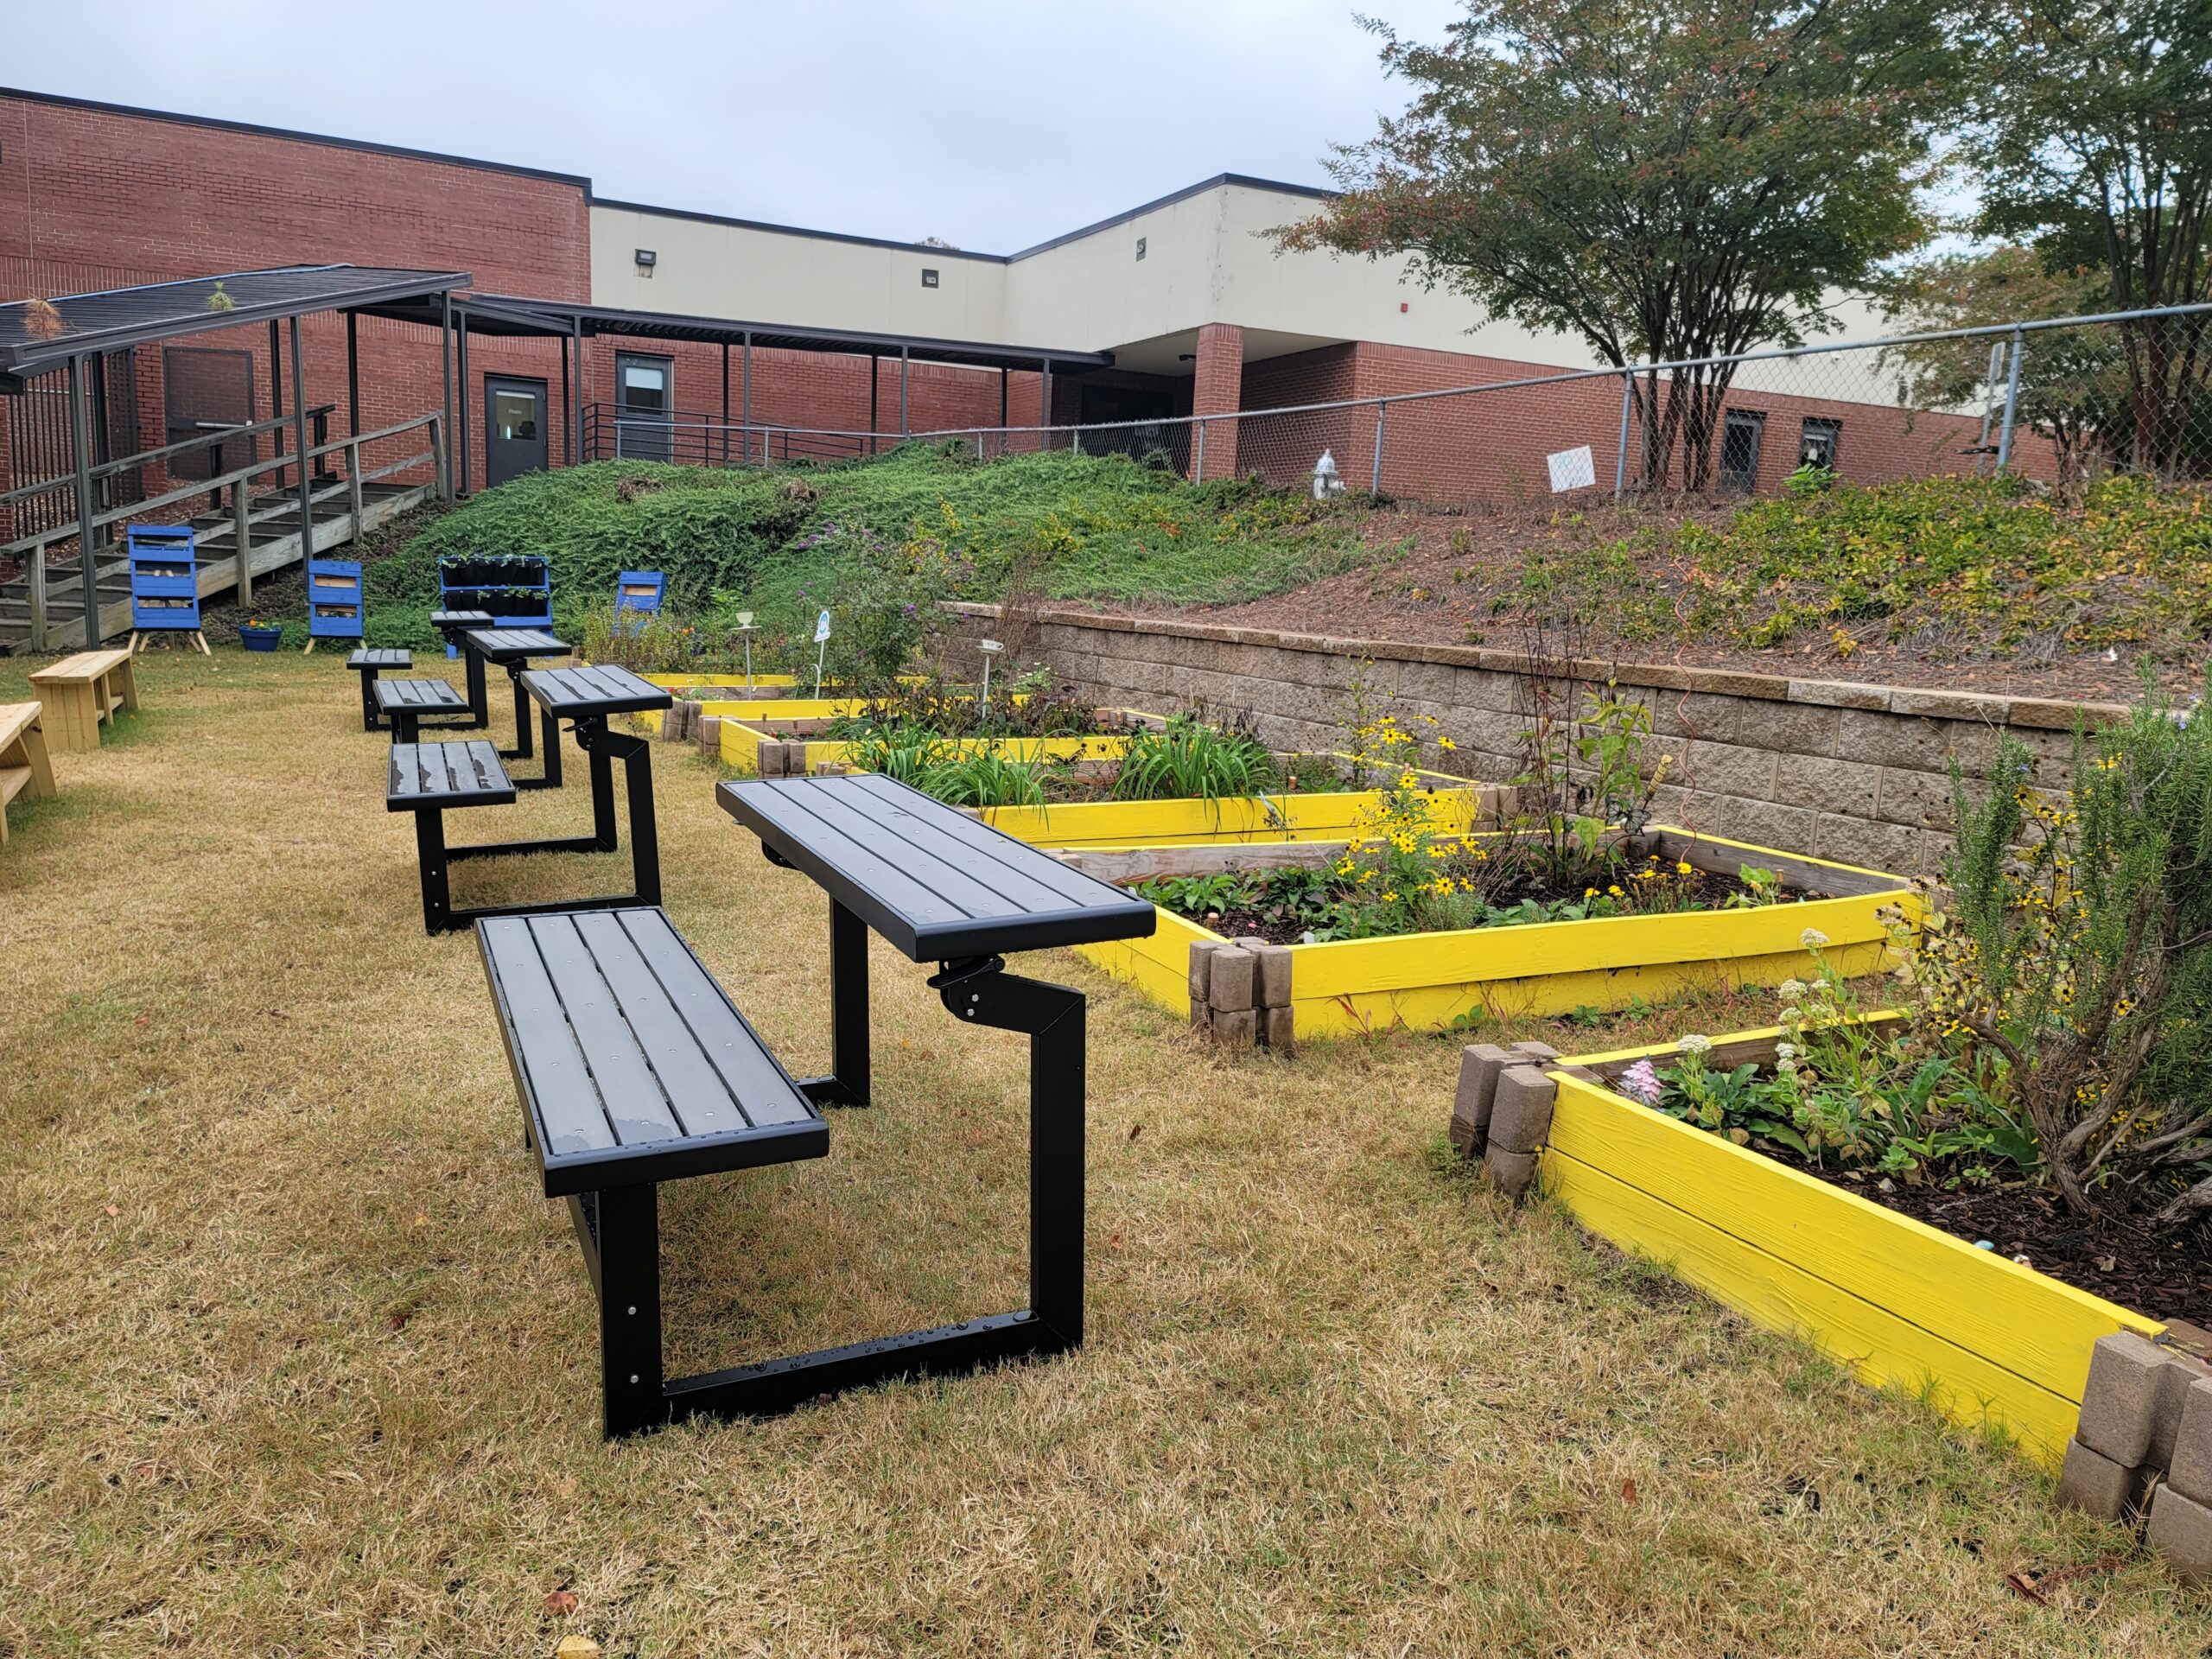 A row of gray outdoor desks face a row of yellow raised garden beds.